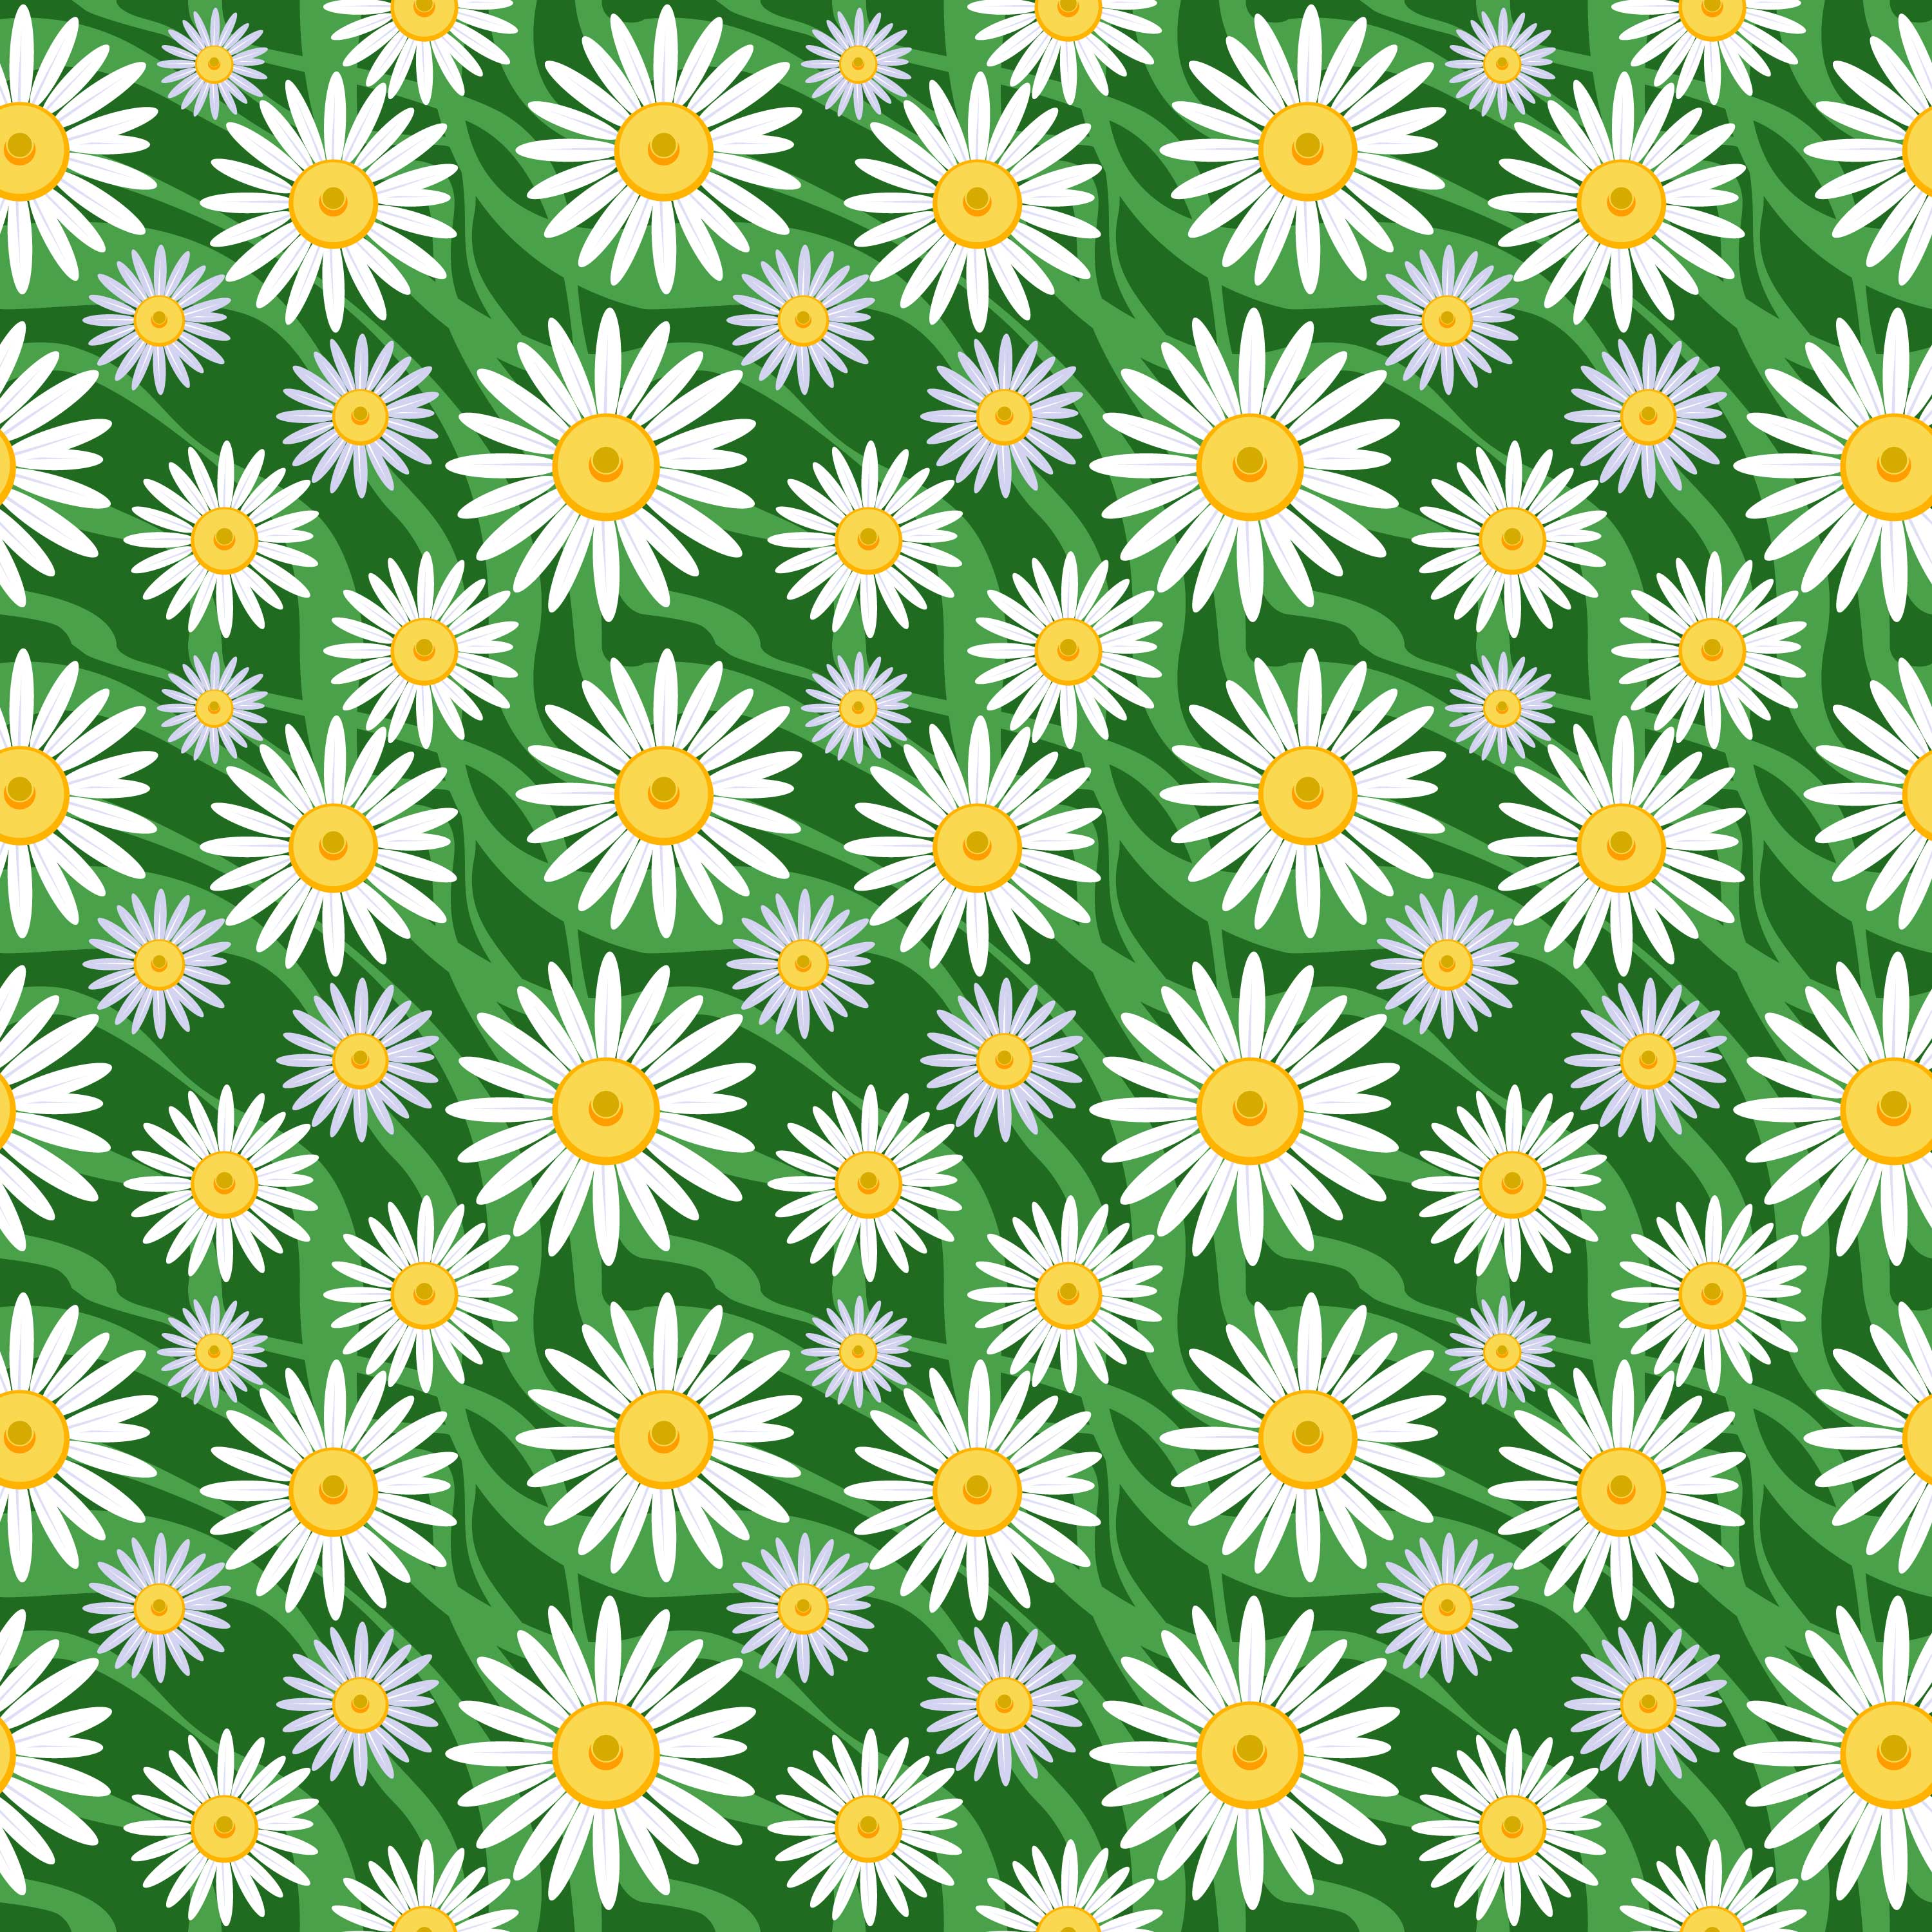 壁紙 背景イラスト 花の模様 柄 パターン No 3 白 水色 緑背景